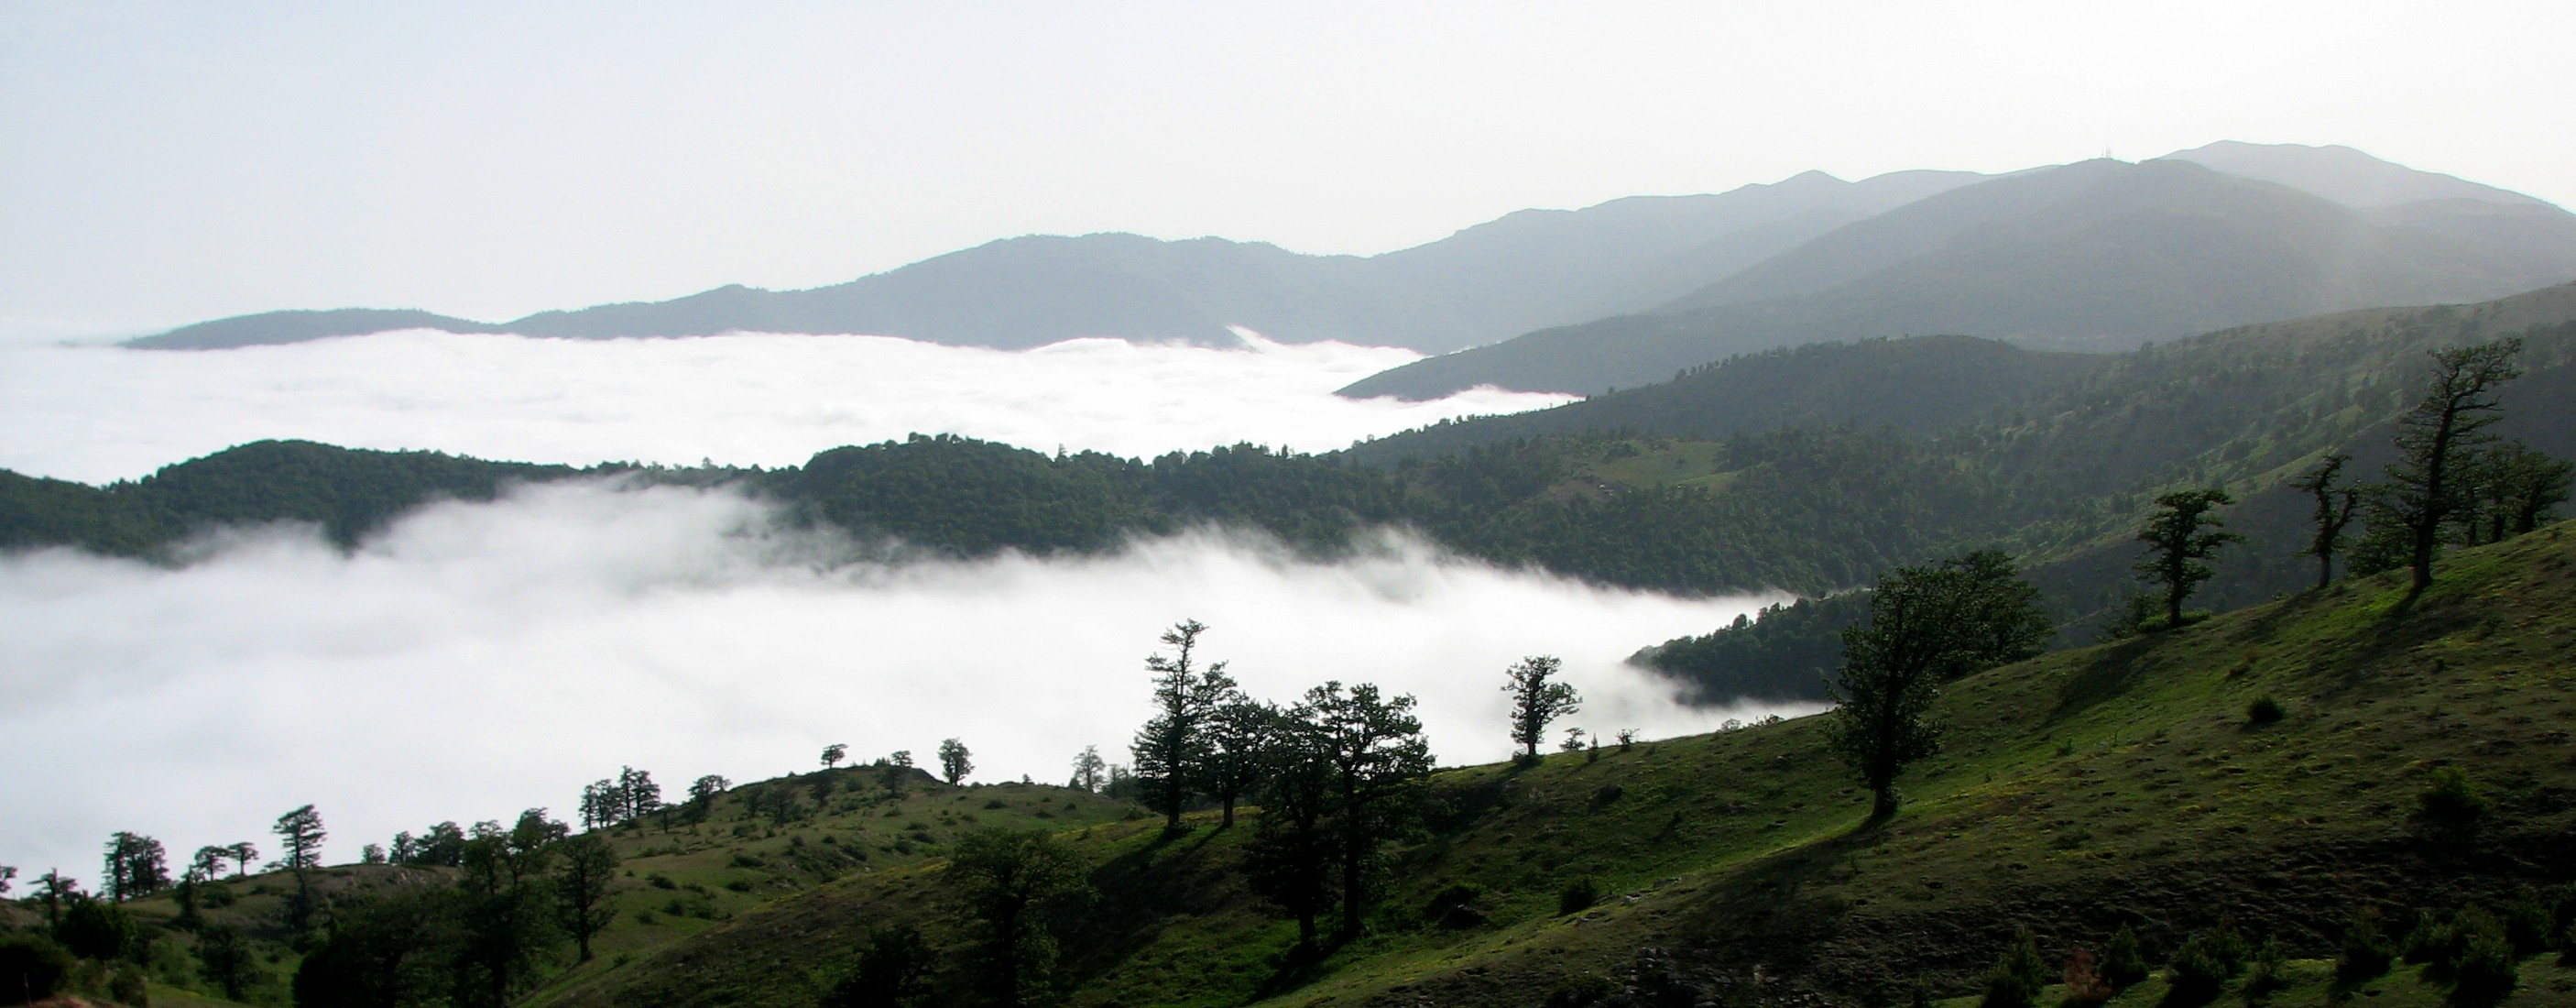 تور ۲ روزه جنگل ابر از آژانس مسافرتی مدیکو سیر با ۲۲درصد تخفیف